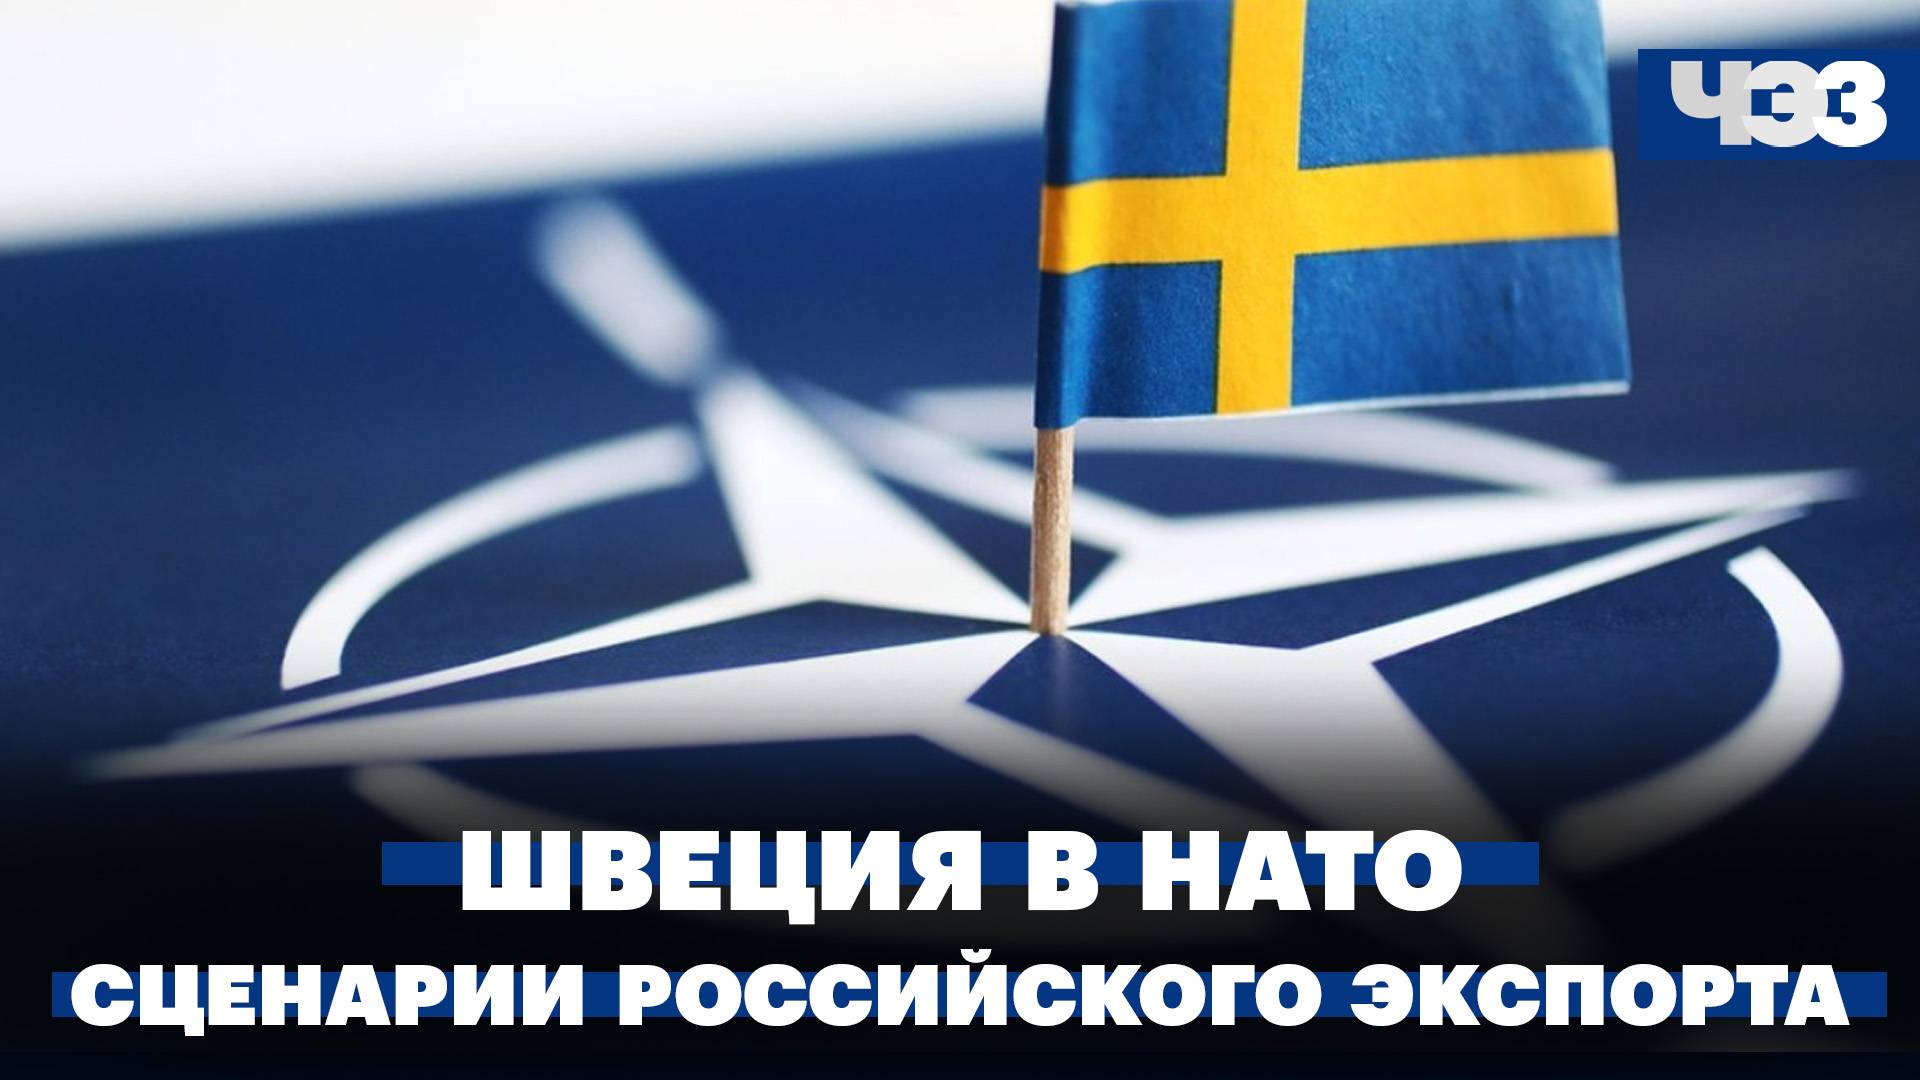 Швеция стала членом НАТО. Два возможных сценария российского экспорта